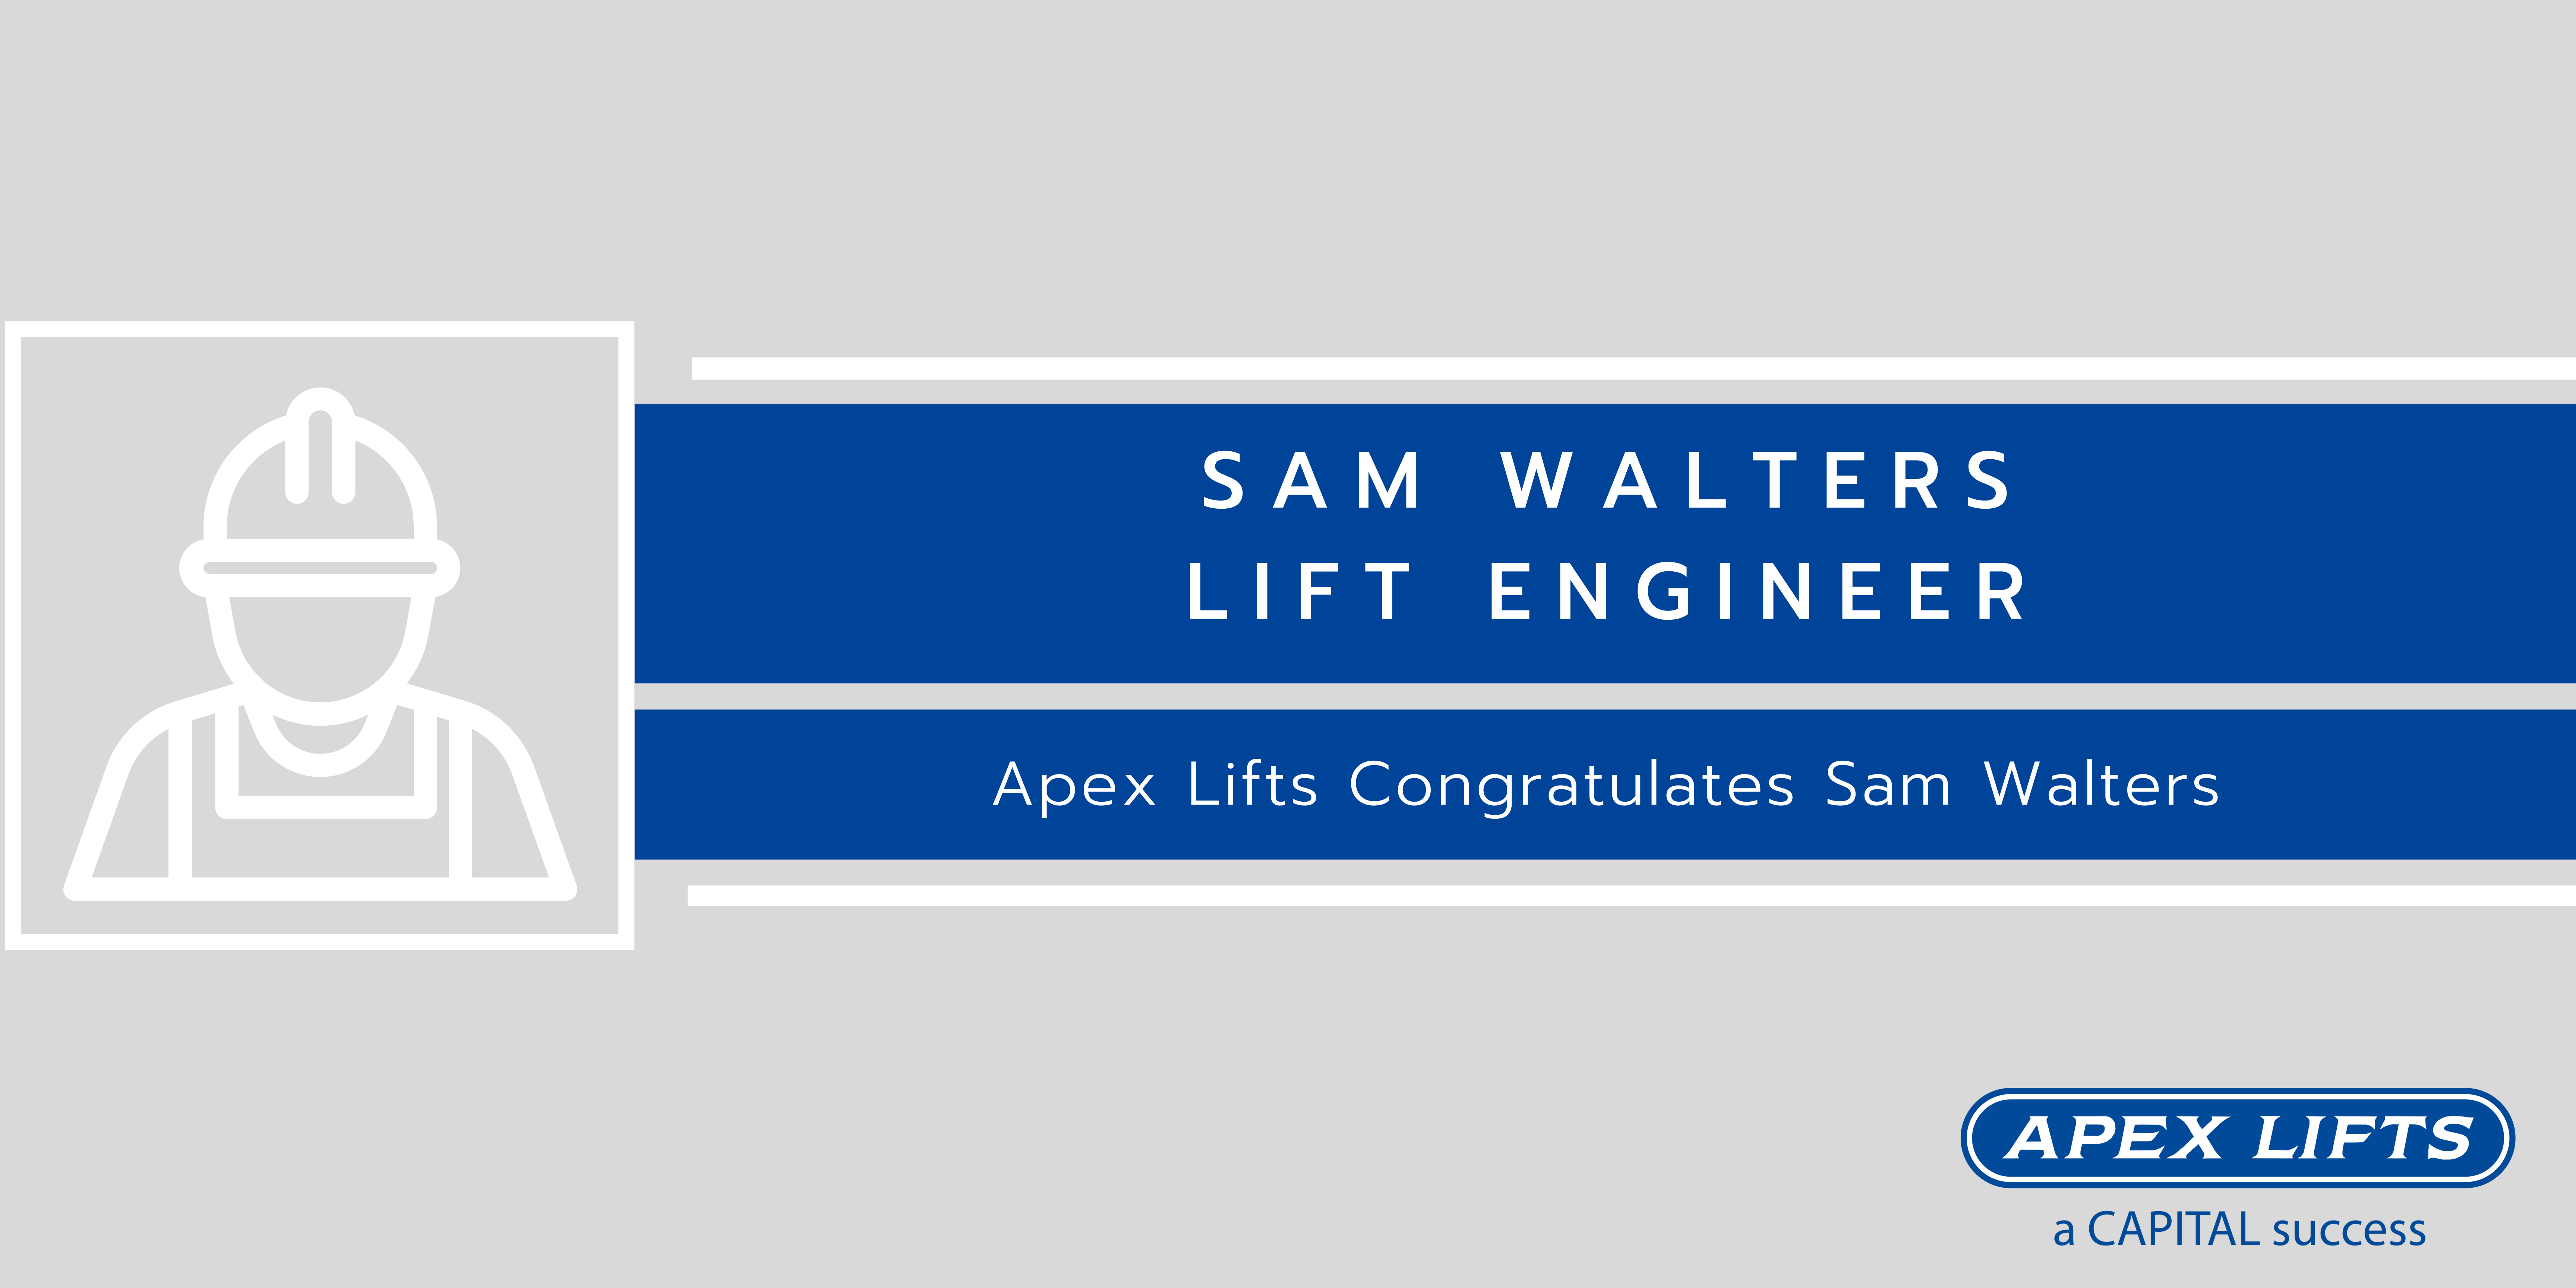 Sam Walters - lift engineer at Apex Lifts